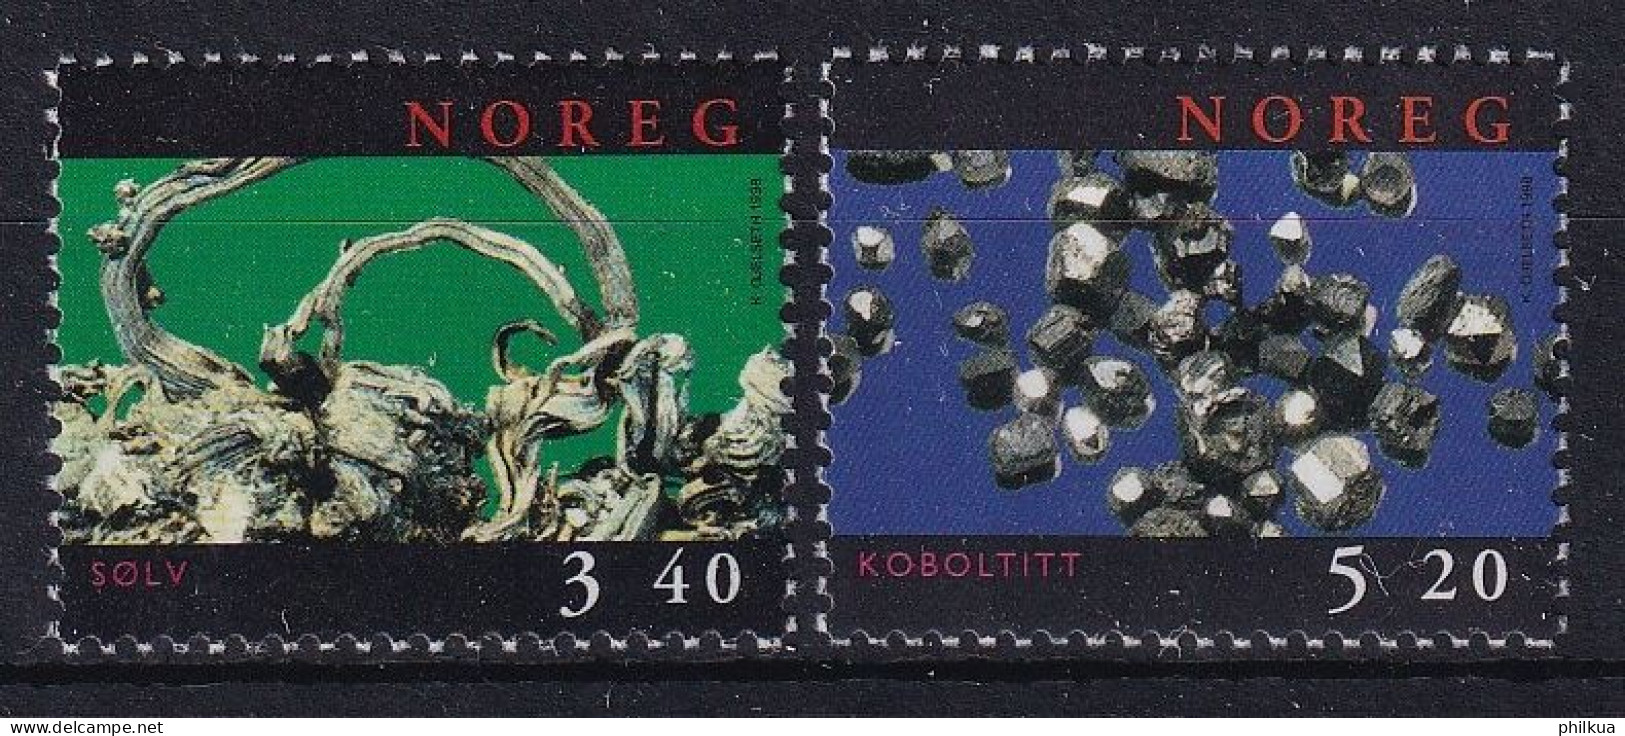 MiNr. 1285 - 1286 Norwegen       1998, 18. Juni. Mineralien - Postfrisch/**/MNH - Ongebruikt